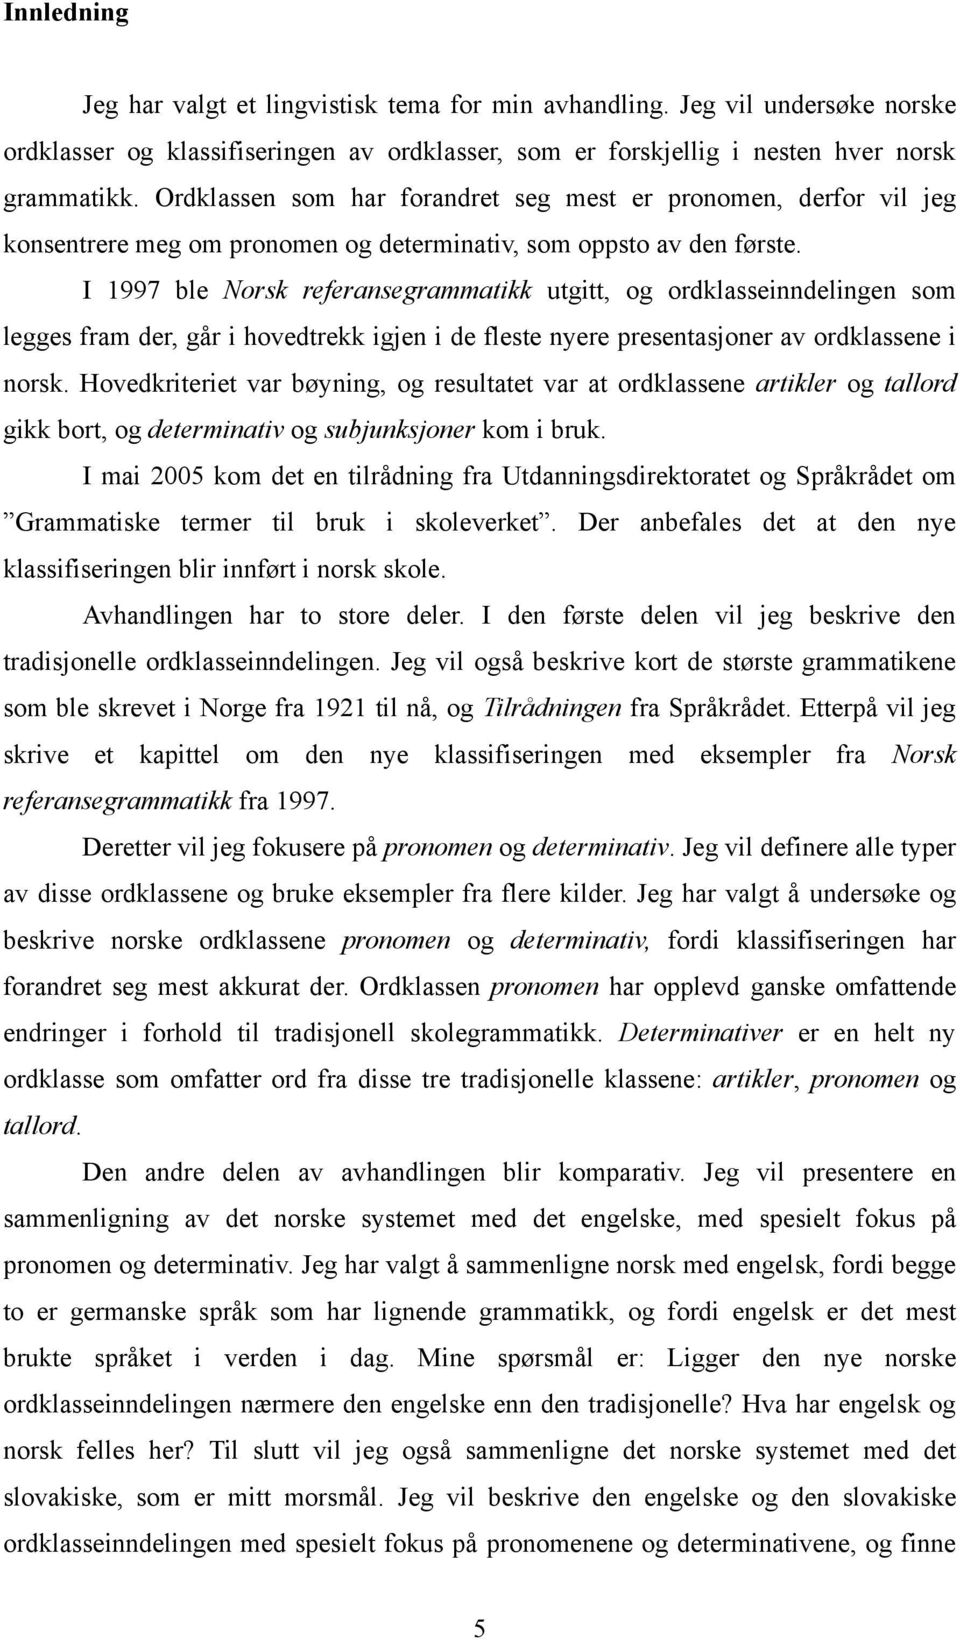 I 1997 ble Norsk referansegrammatikk utgitt, og ordklasseinndelingen som legges fram der, går i hovedtrekk igjen i de fleste nyere presentasjoner av ordklassene i norsk.